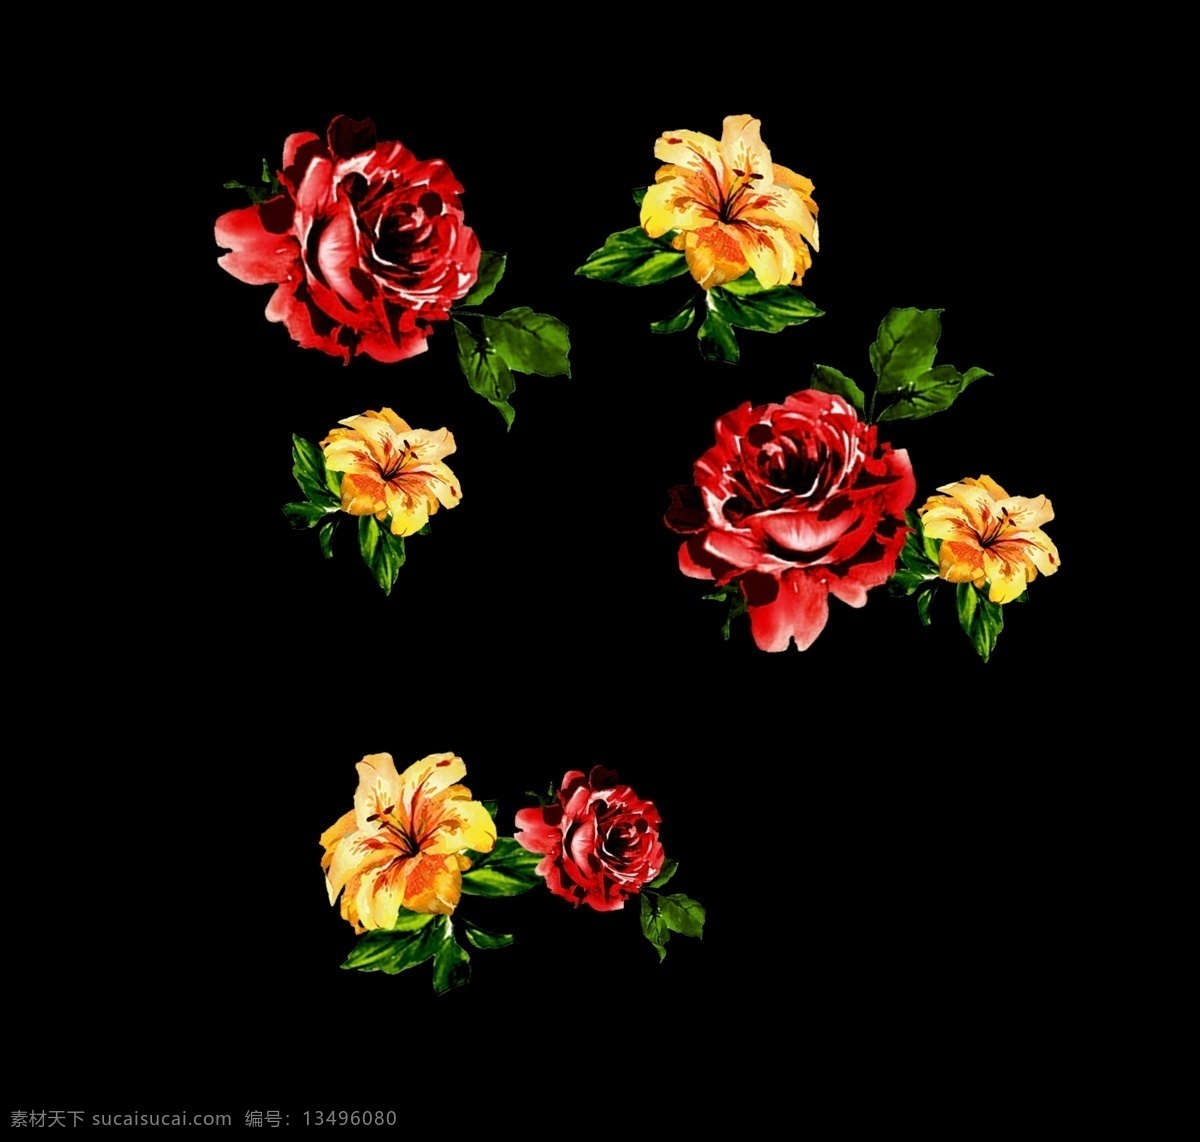 红 黑手 绘 水彩 玫瑰花 红色 黄色 结合 花型 手绘 优美优雅 复古风格 情人节花朵